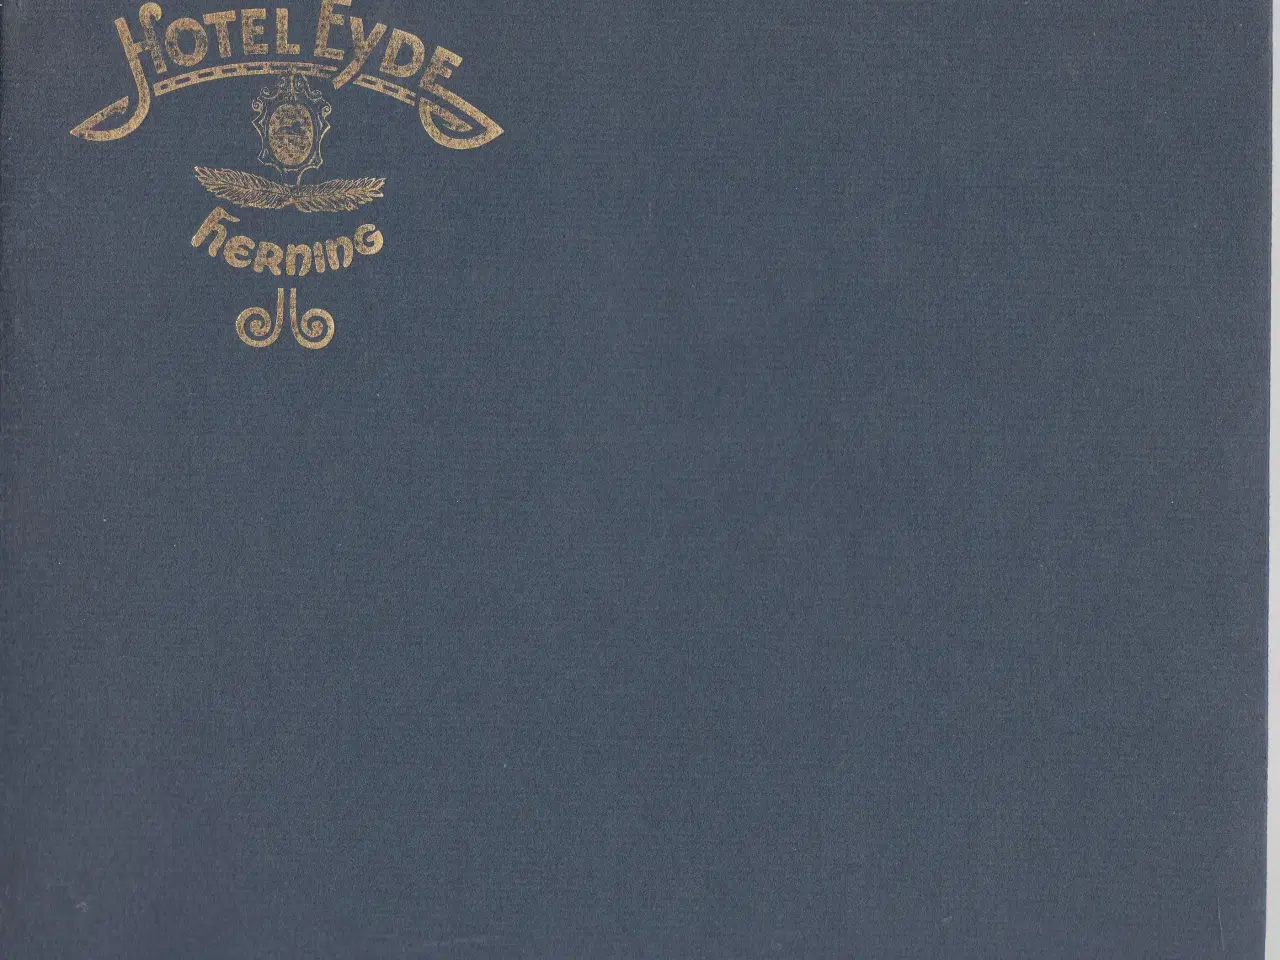 Billede 1 - HOTEL EYDE Herning 125 år 1964 